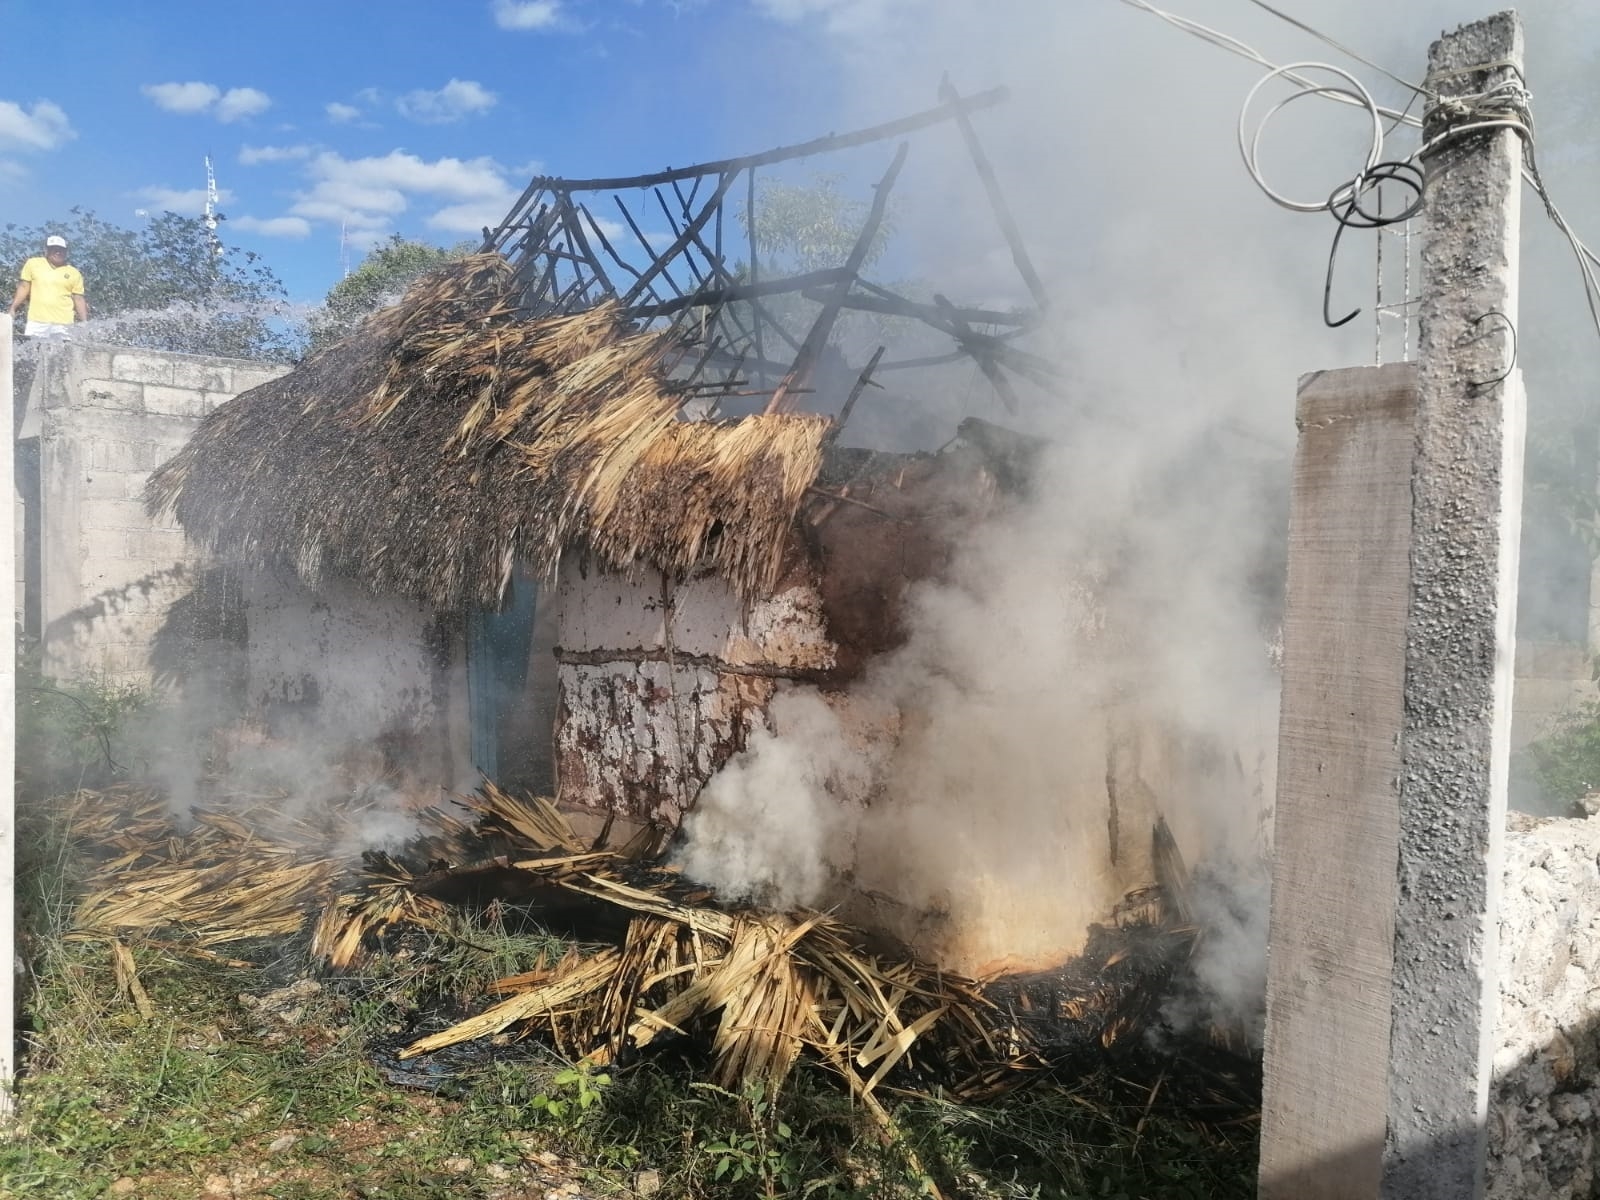 Posible uso de pirotecnia provoca incendio en humilde vivienda de Calkiní